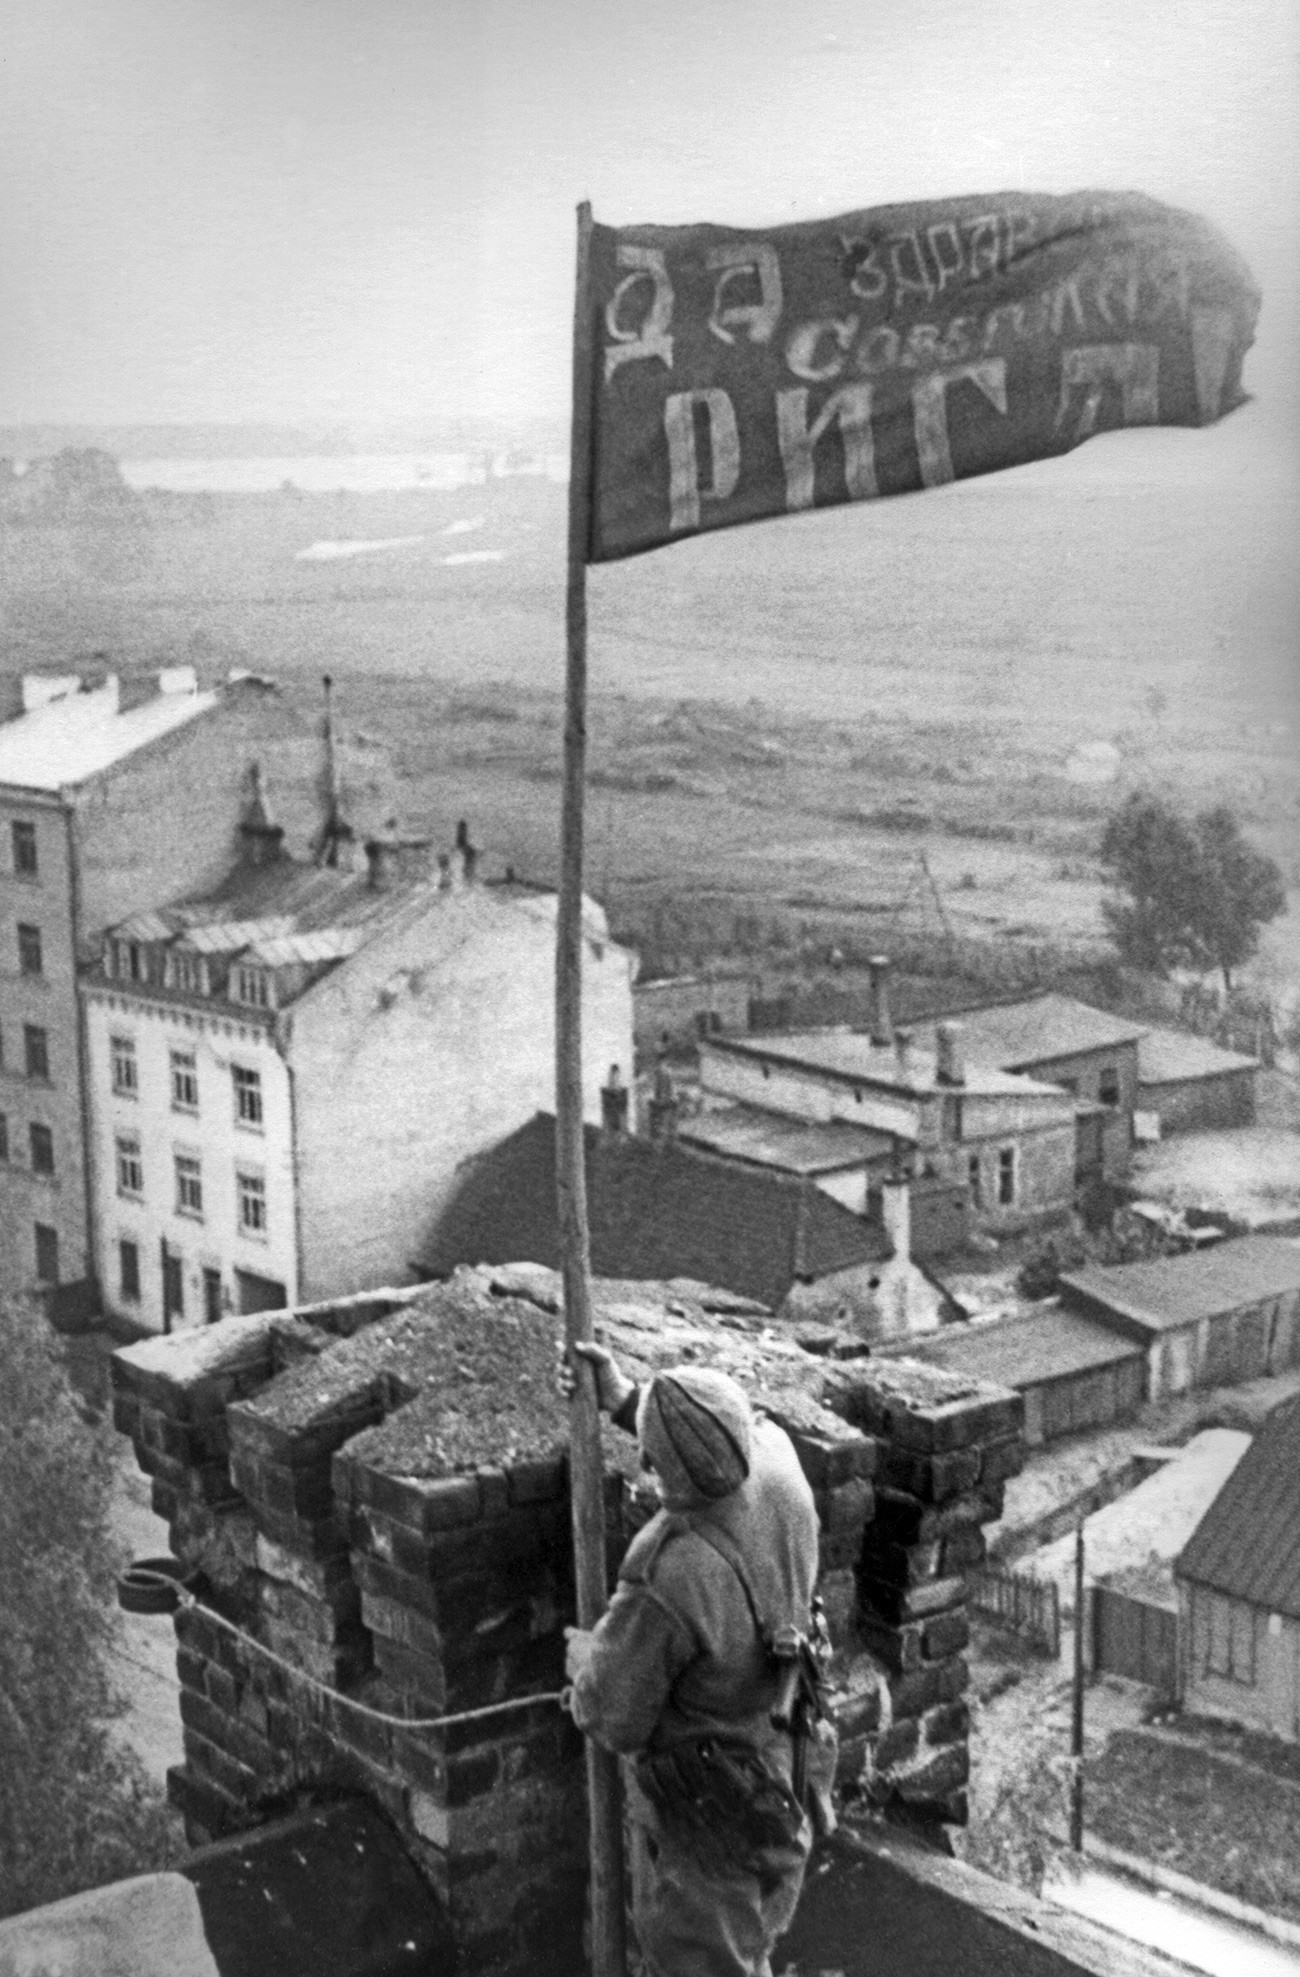 Letonska Sovjetska Socijalistička Republika. Riga. Postavljanje crvene zastave poslije oslobođenja grada od njemačko-nacističke okupacije.